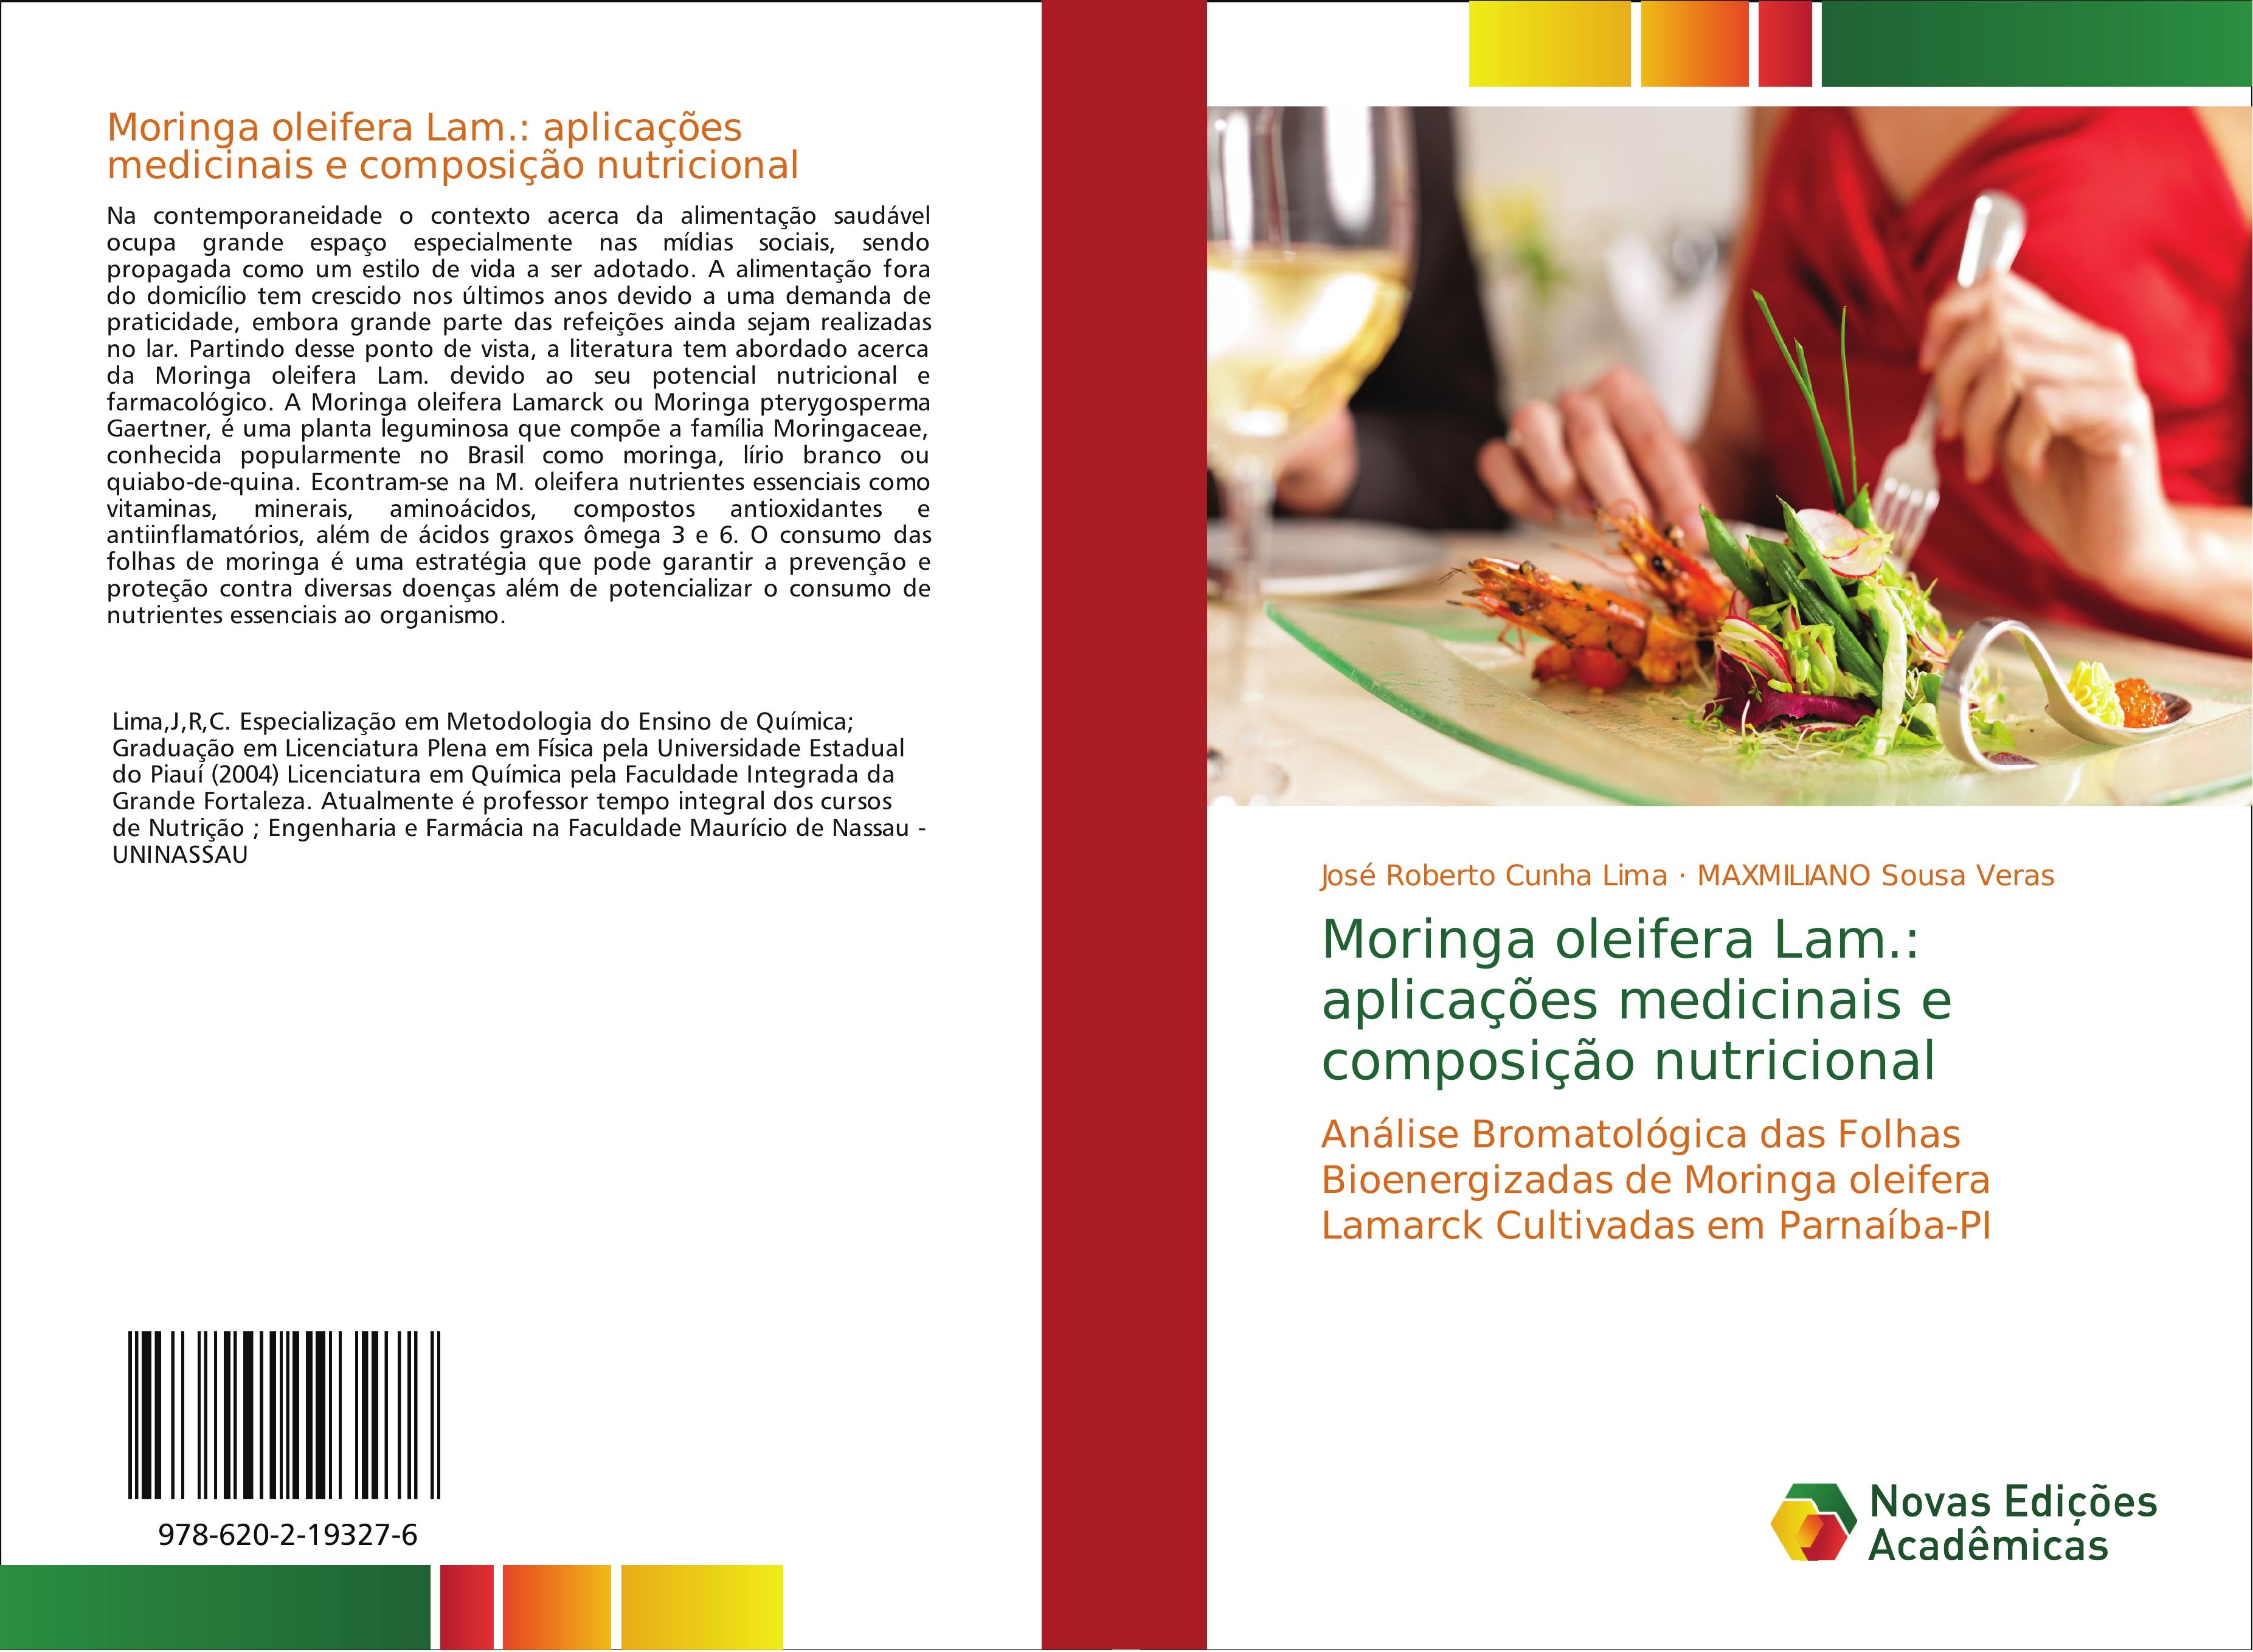 Moringa oleifera Lam.: aplicações medicinais e composição nutricional - Cunha Lima, José Roberto Sousa Veras, MAXMILIANO